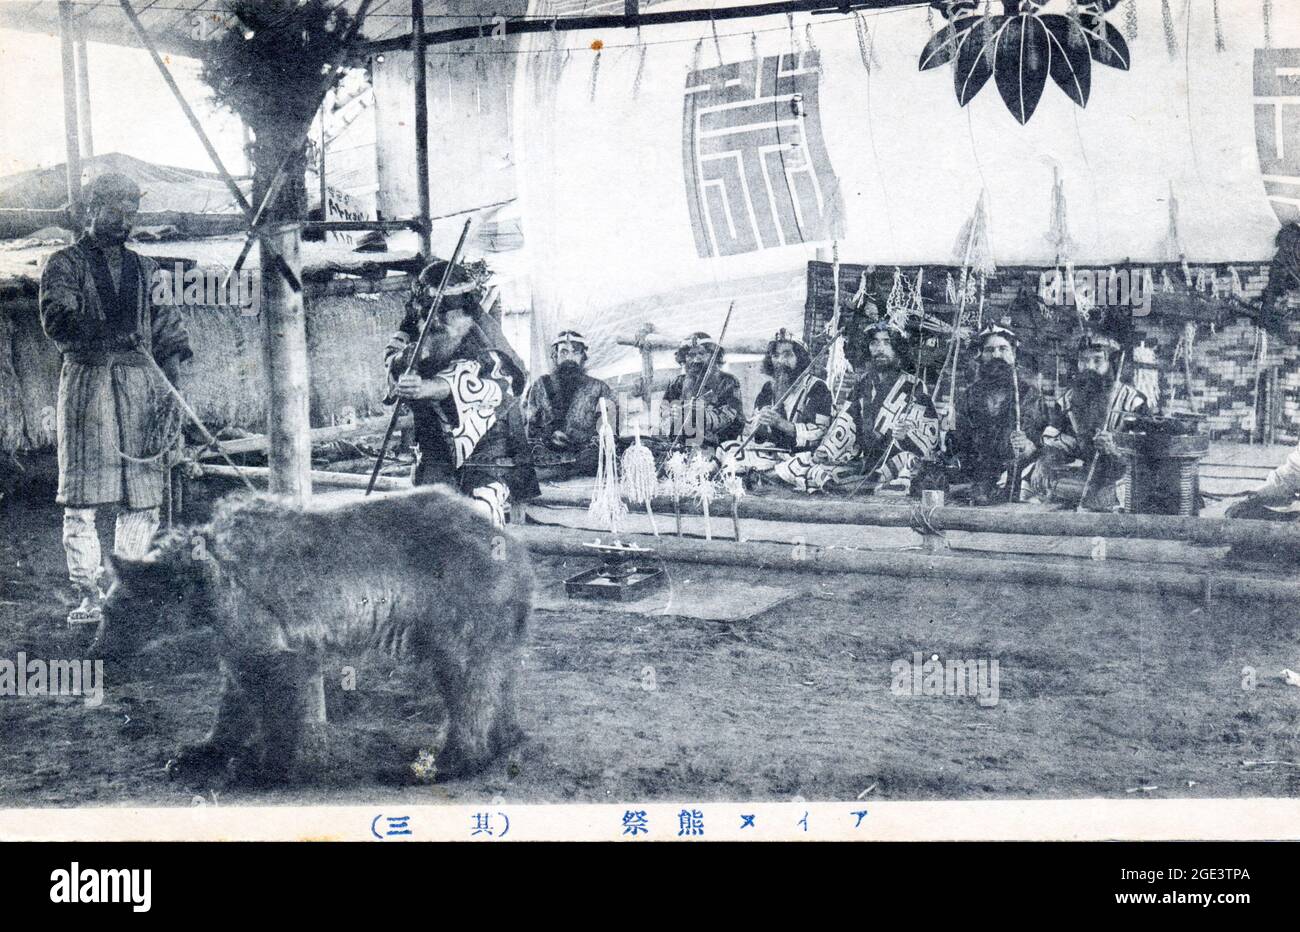 Ancienne carte postale japonaise noire et blanche, vers 1910, d'un groupe de personnes Ainu assis, portant un costume traditionnel, avec un ours captif attaché devant. Banque D'Images